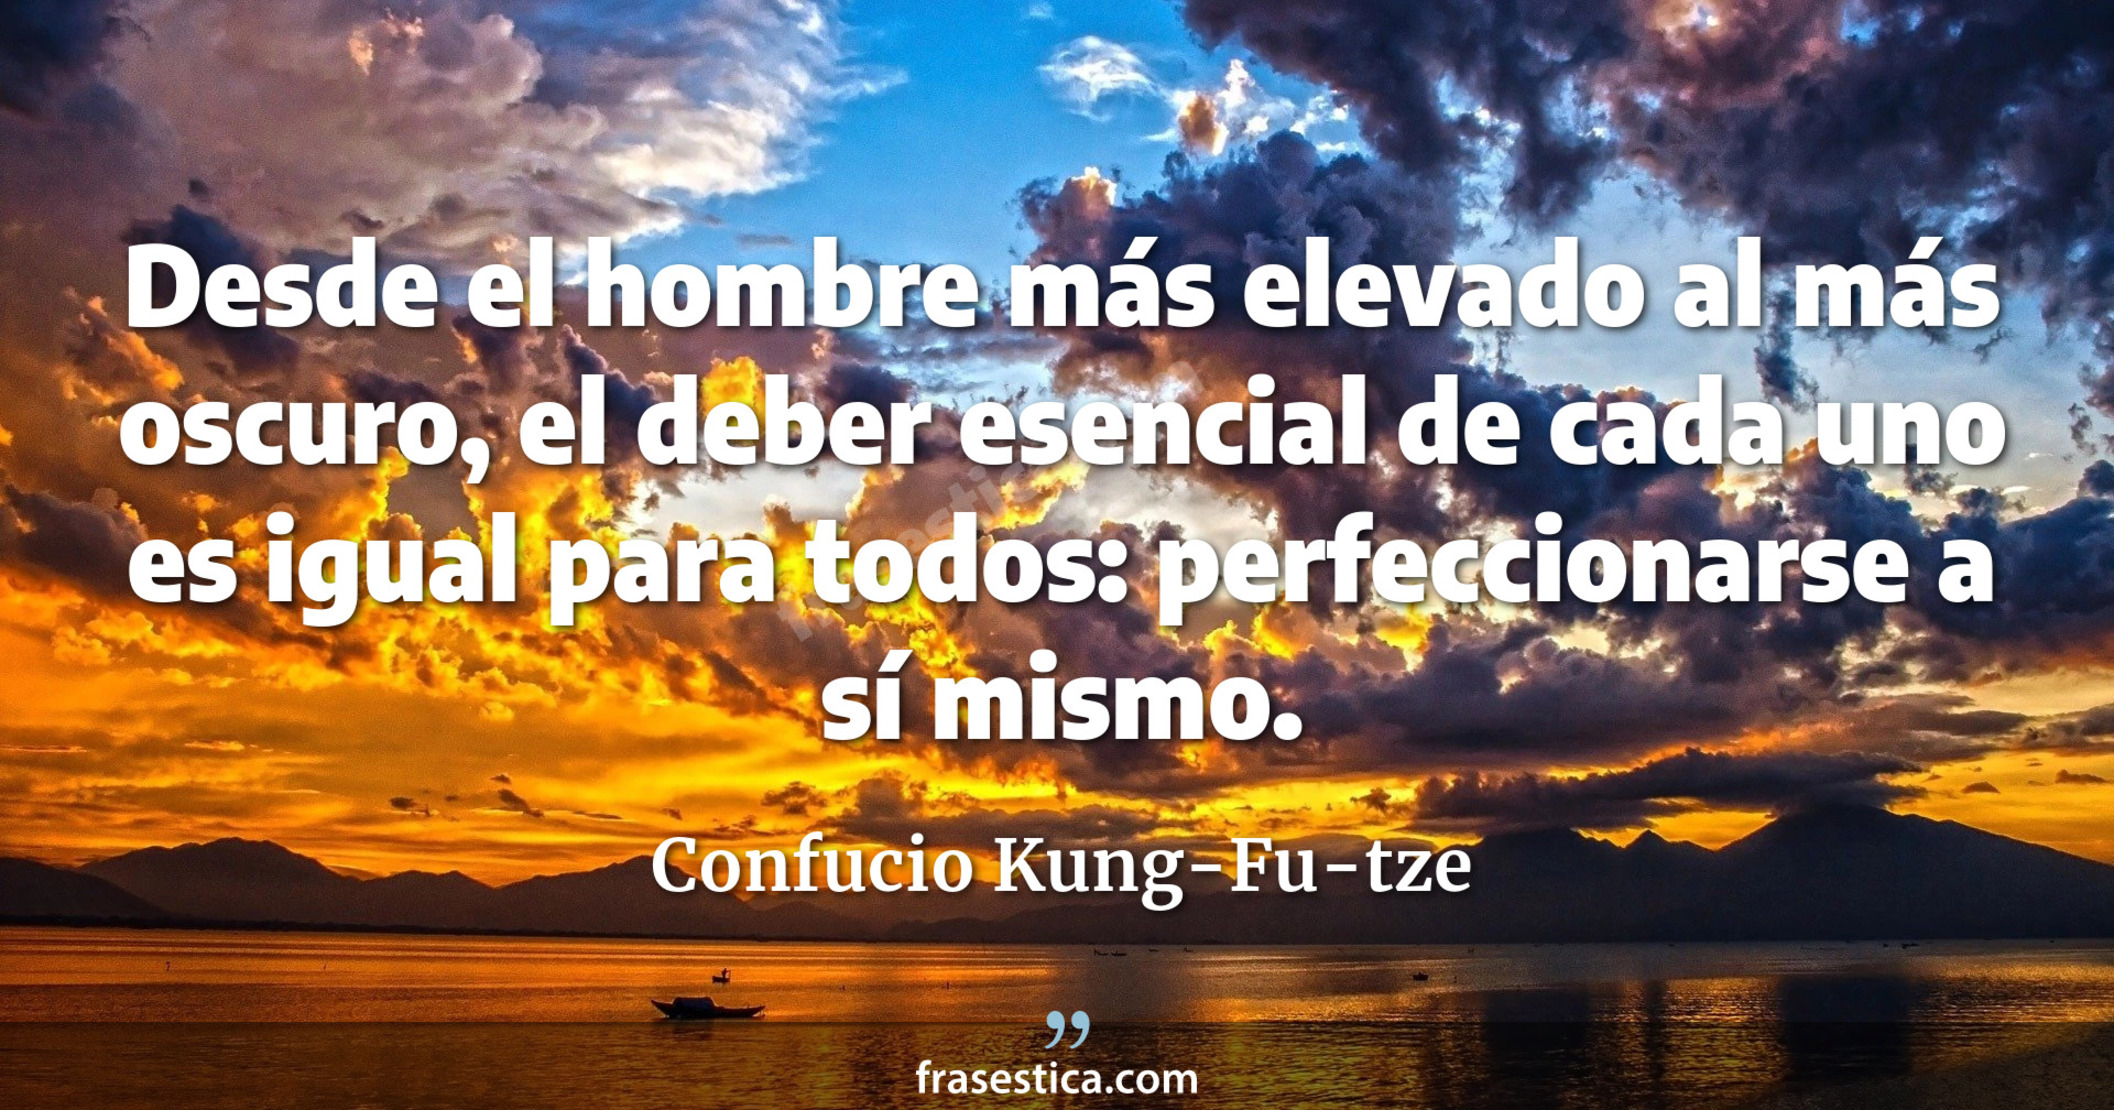 Desde el hombre más elevado al más oscuro, el deber esencial de cada uno es igual para todos: perfeccionarse a sí mismo. - Confucio Kung-Fu-tze